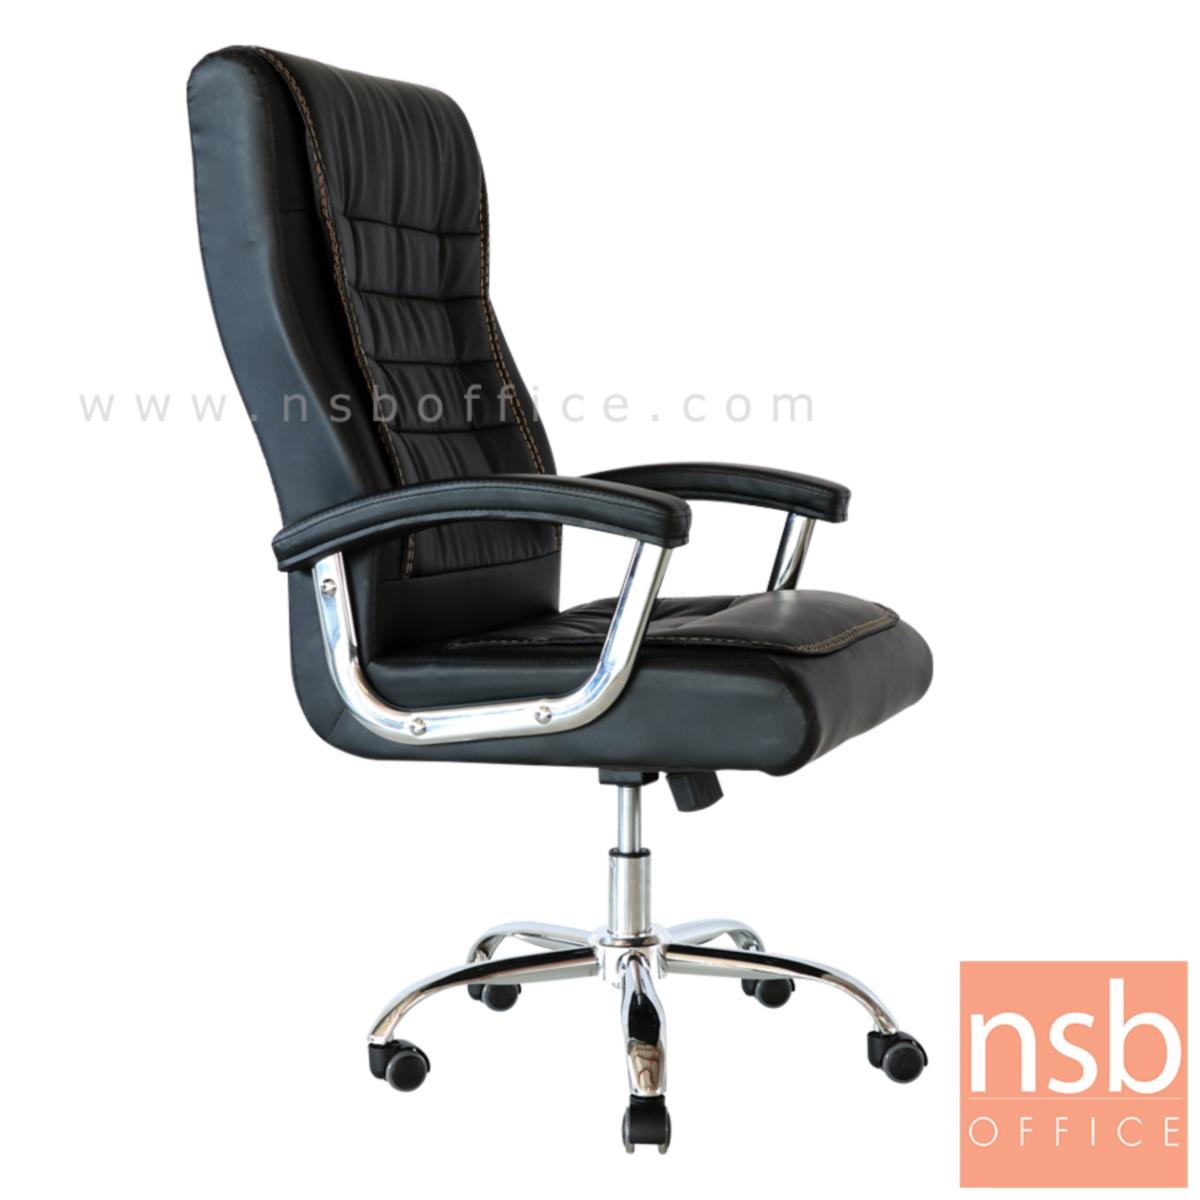 B01A516:เก้าอี้ผู้บริหาร รุ่น Maglorix (แมคโลริค) ขาเหล็กชุบโครเมี่ยม 